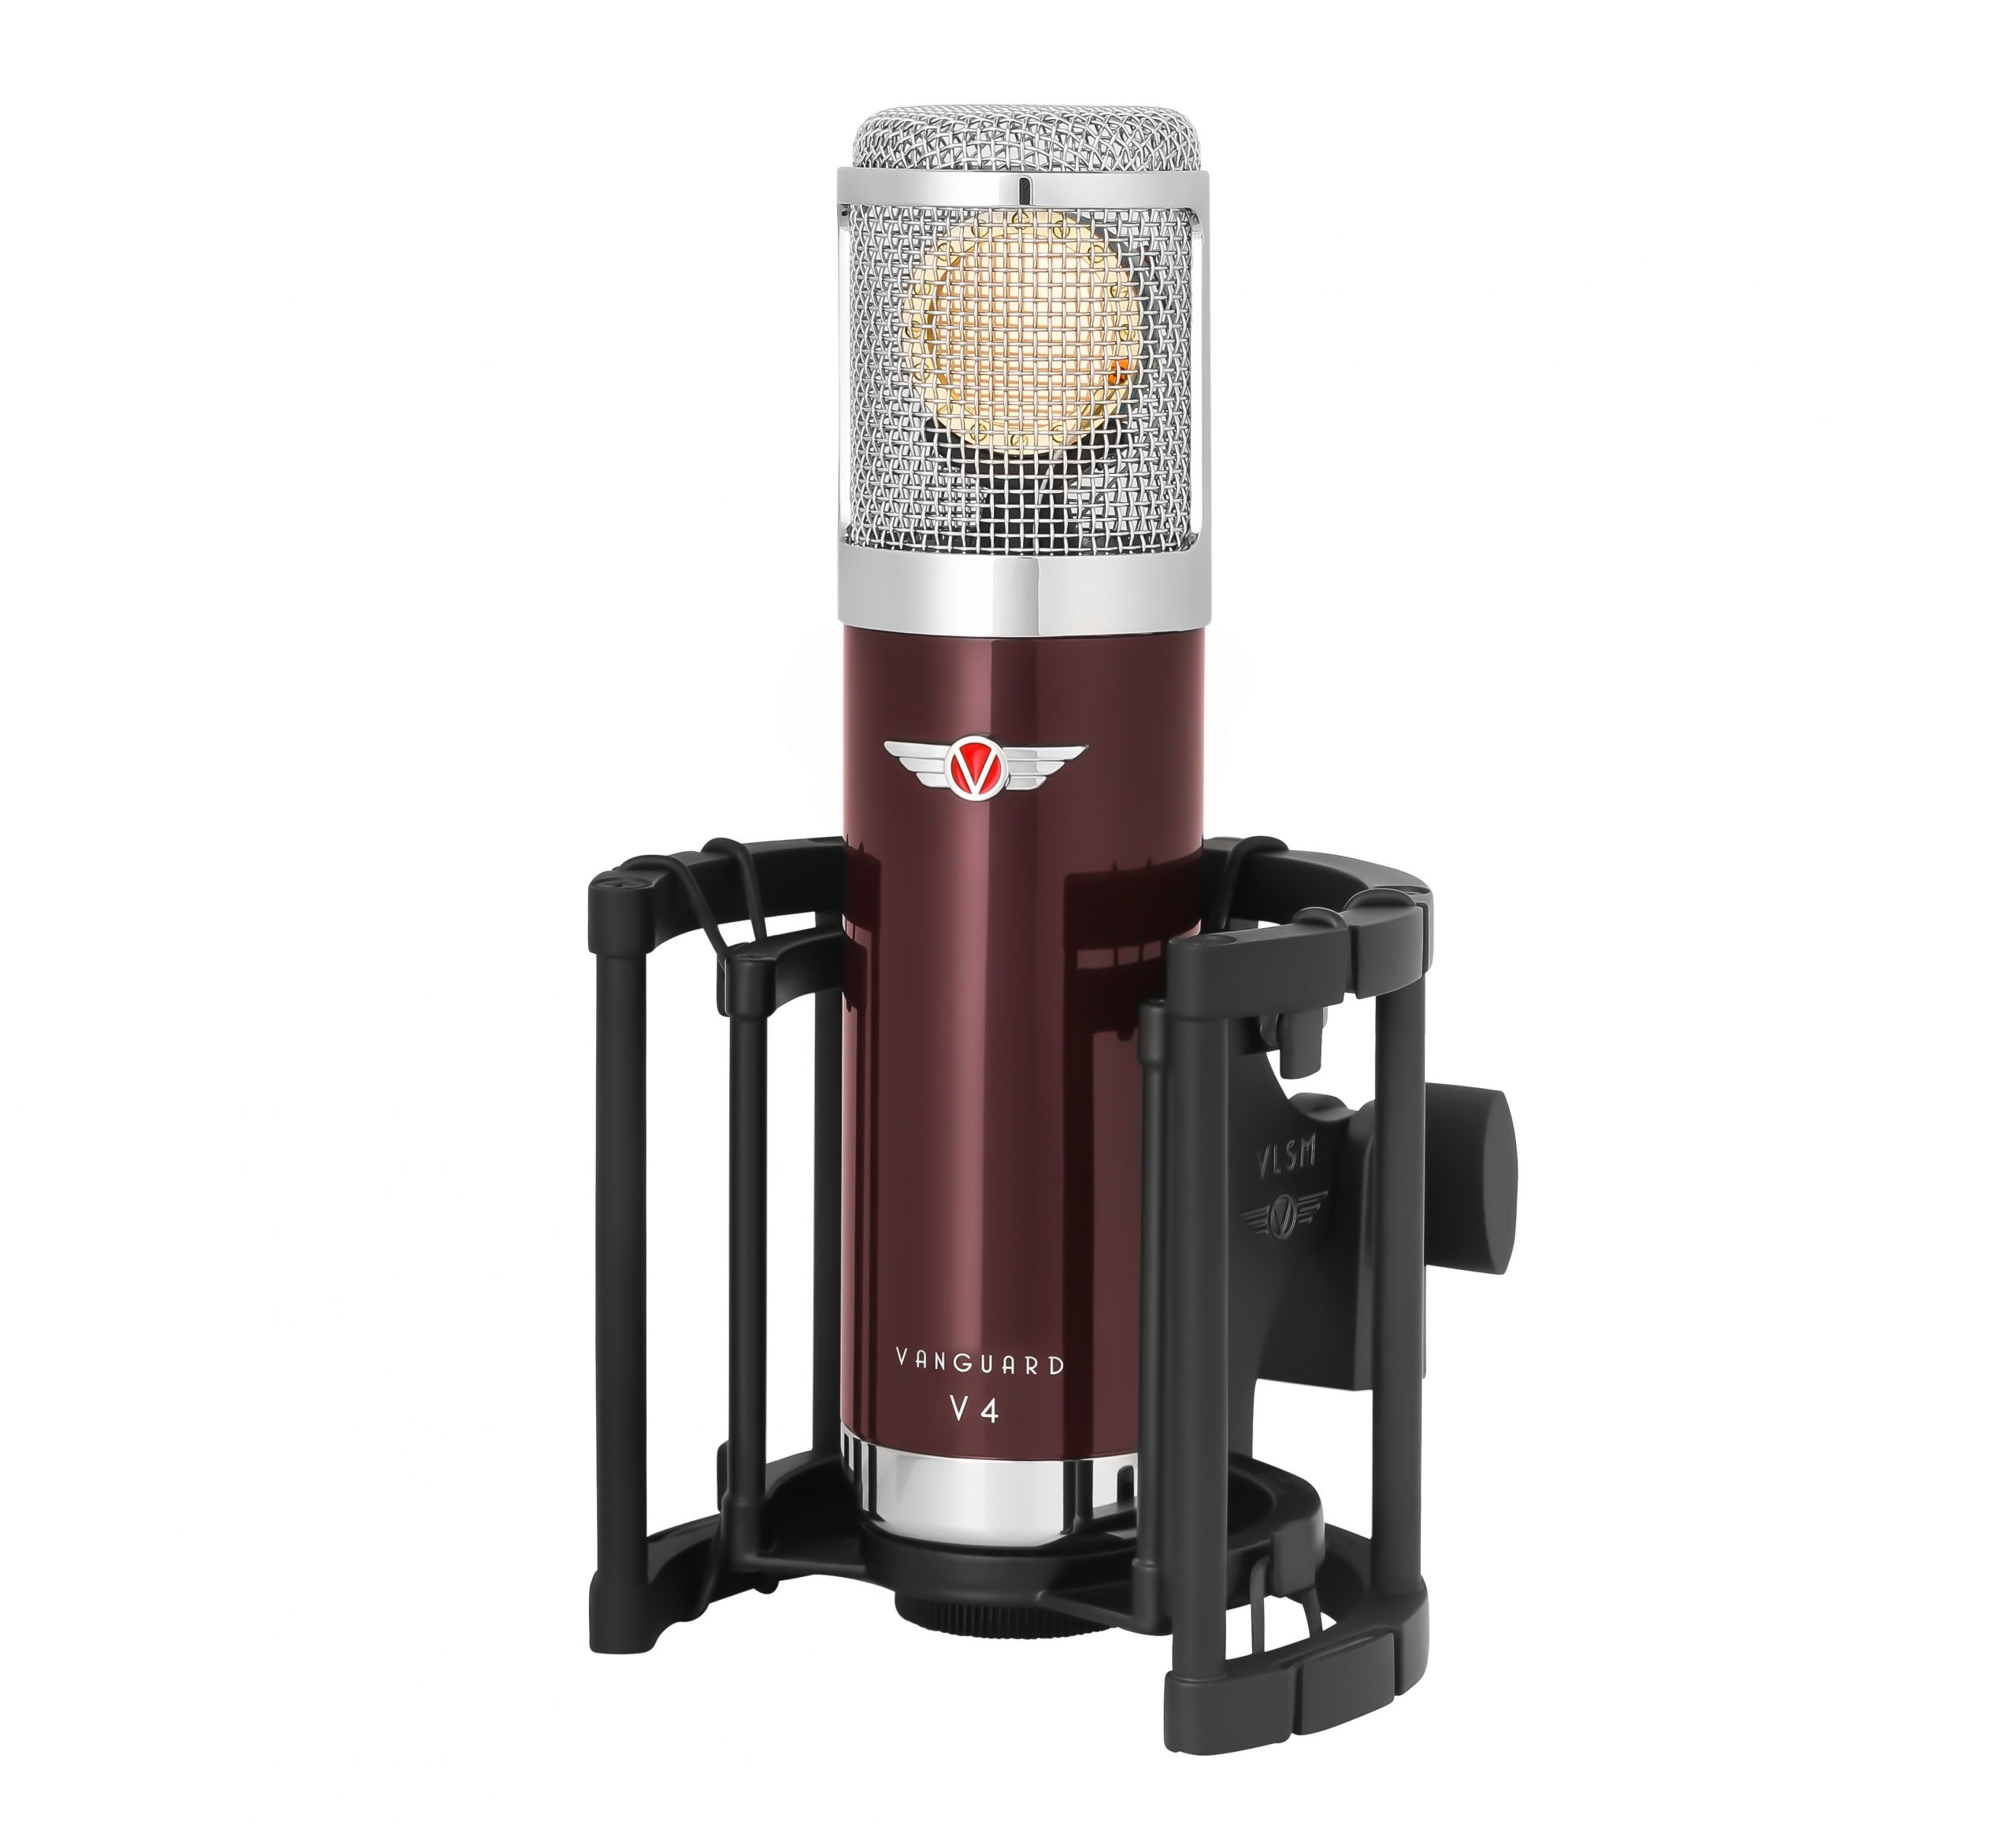 Vanguard V4 Gen2 FET-Kondesatormikrofon Vorderseite FET-condensator microphone front in Shockmount